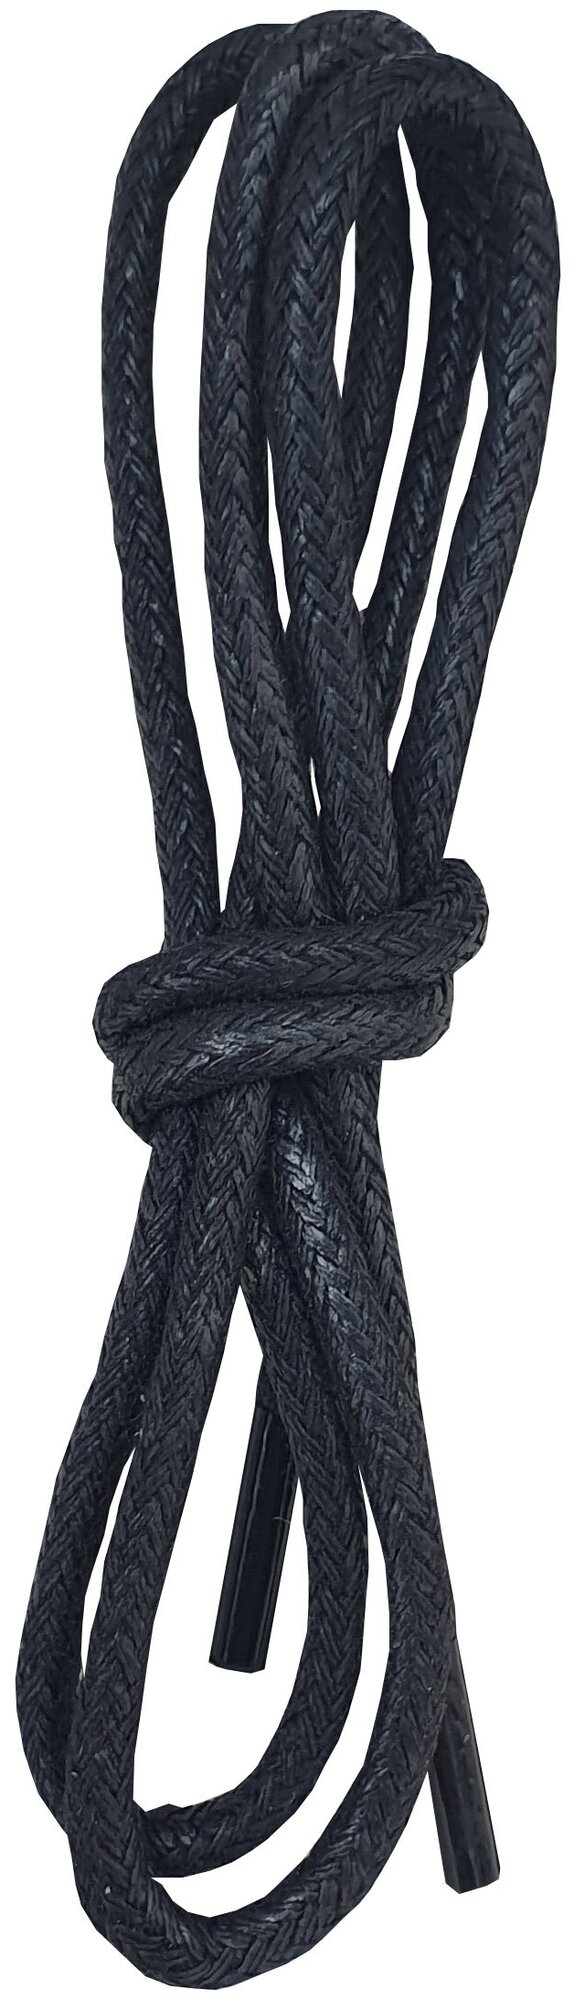 Шнурки орион 150см круглые с пропиткой черные